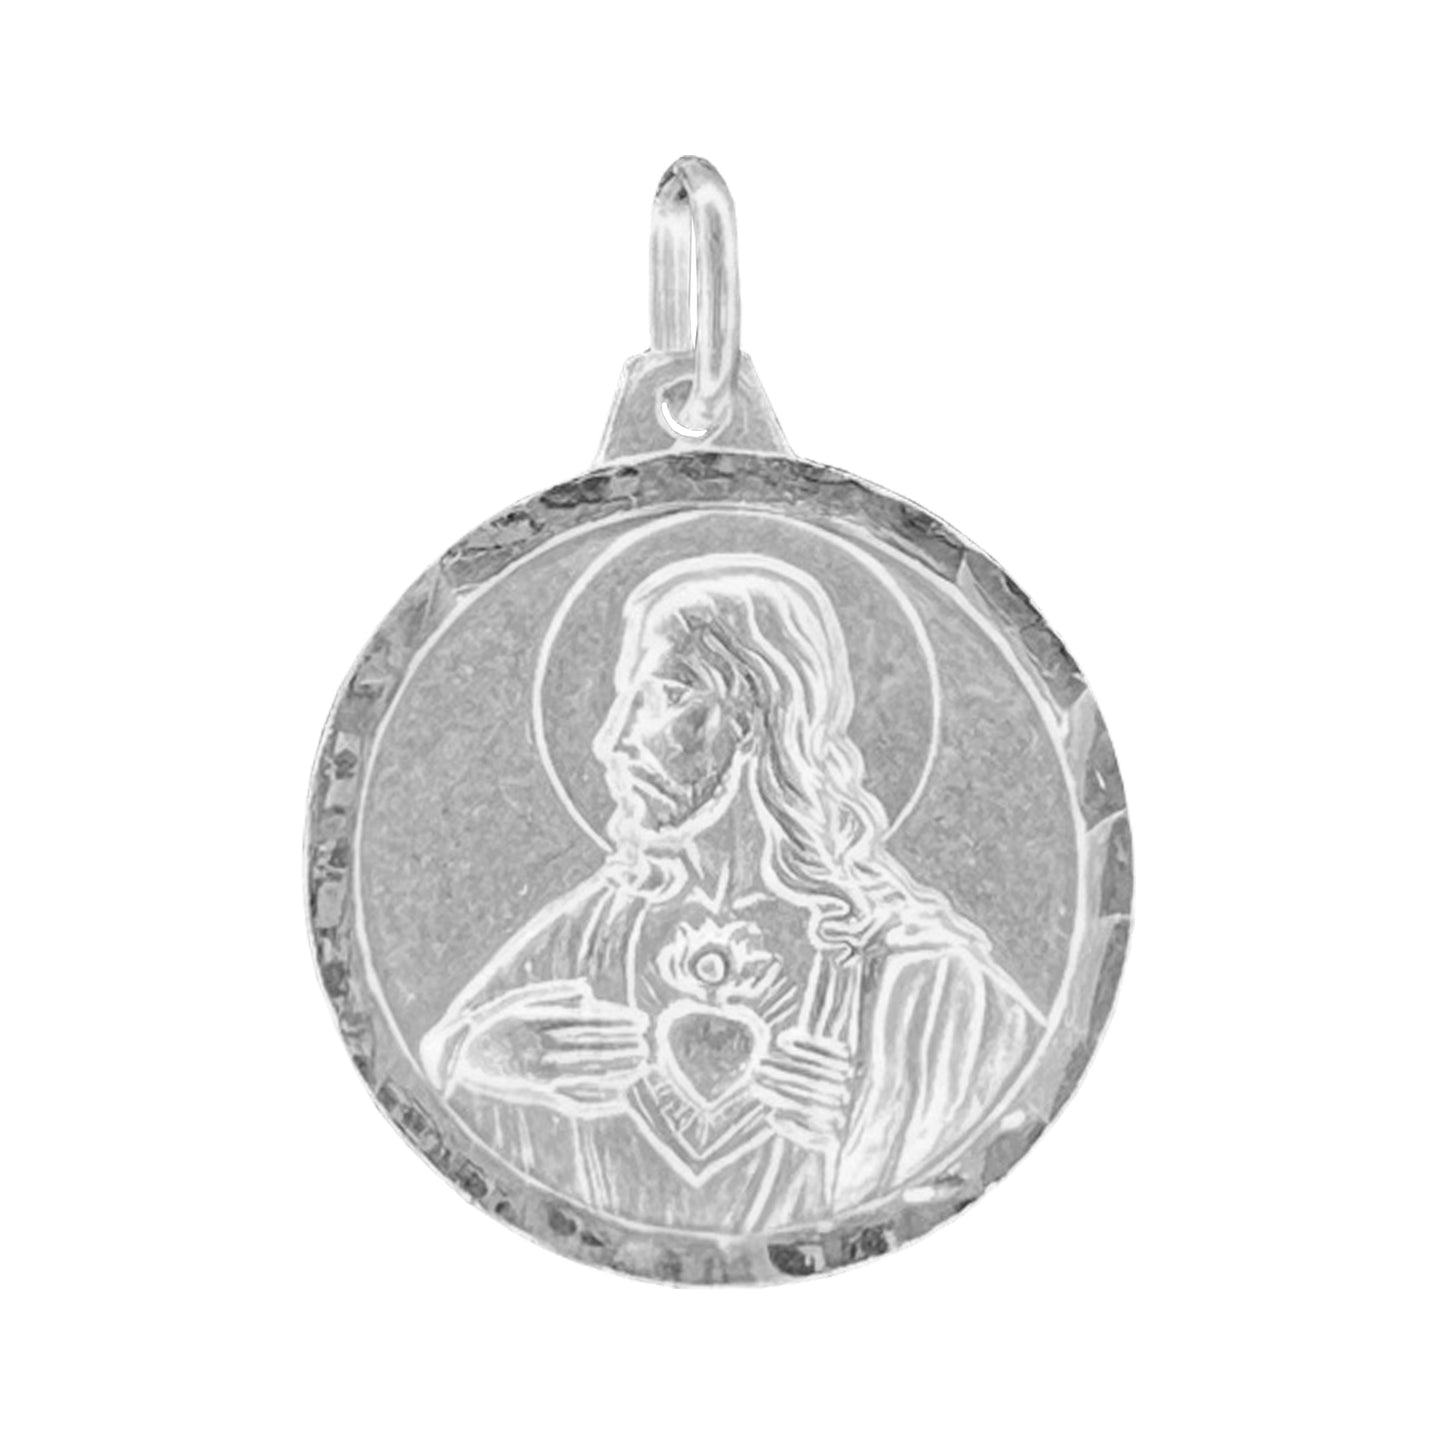 Colgante Medalla Corazon de Jesus